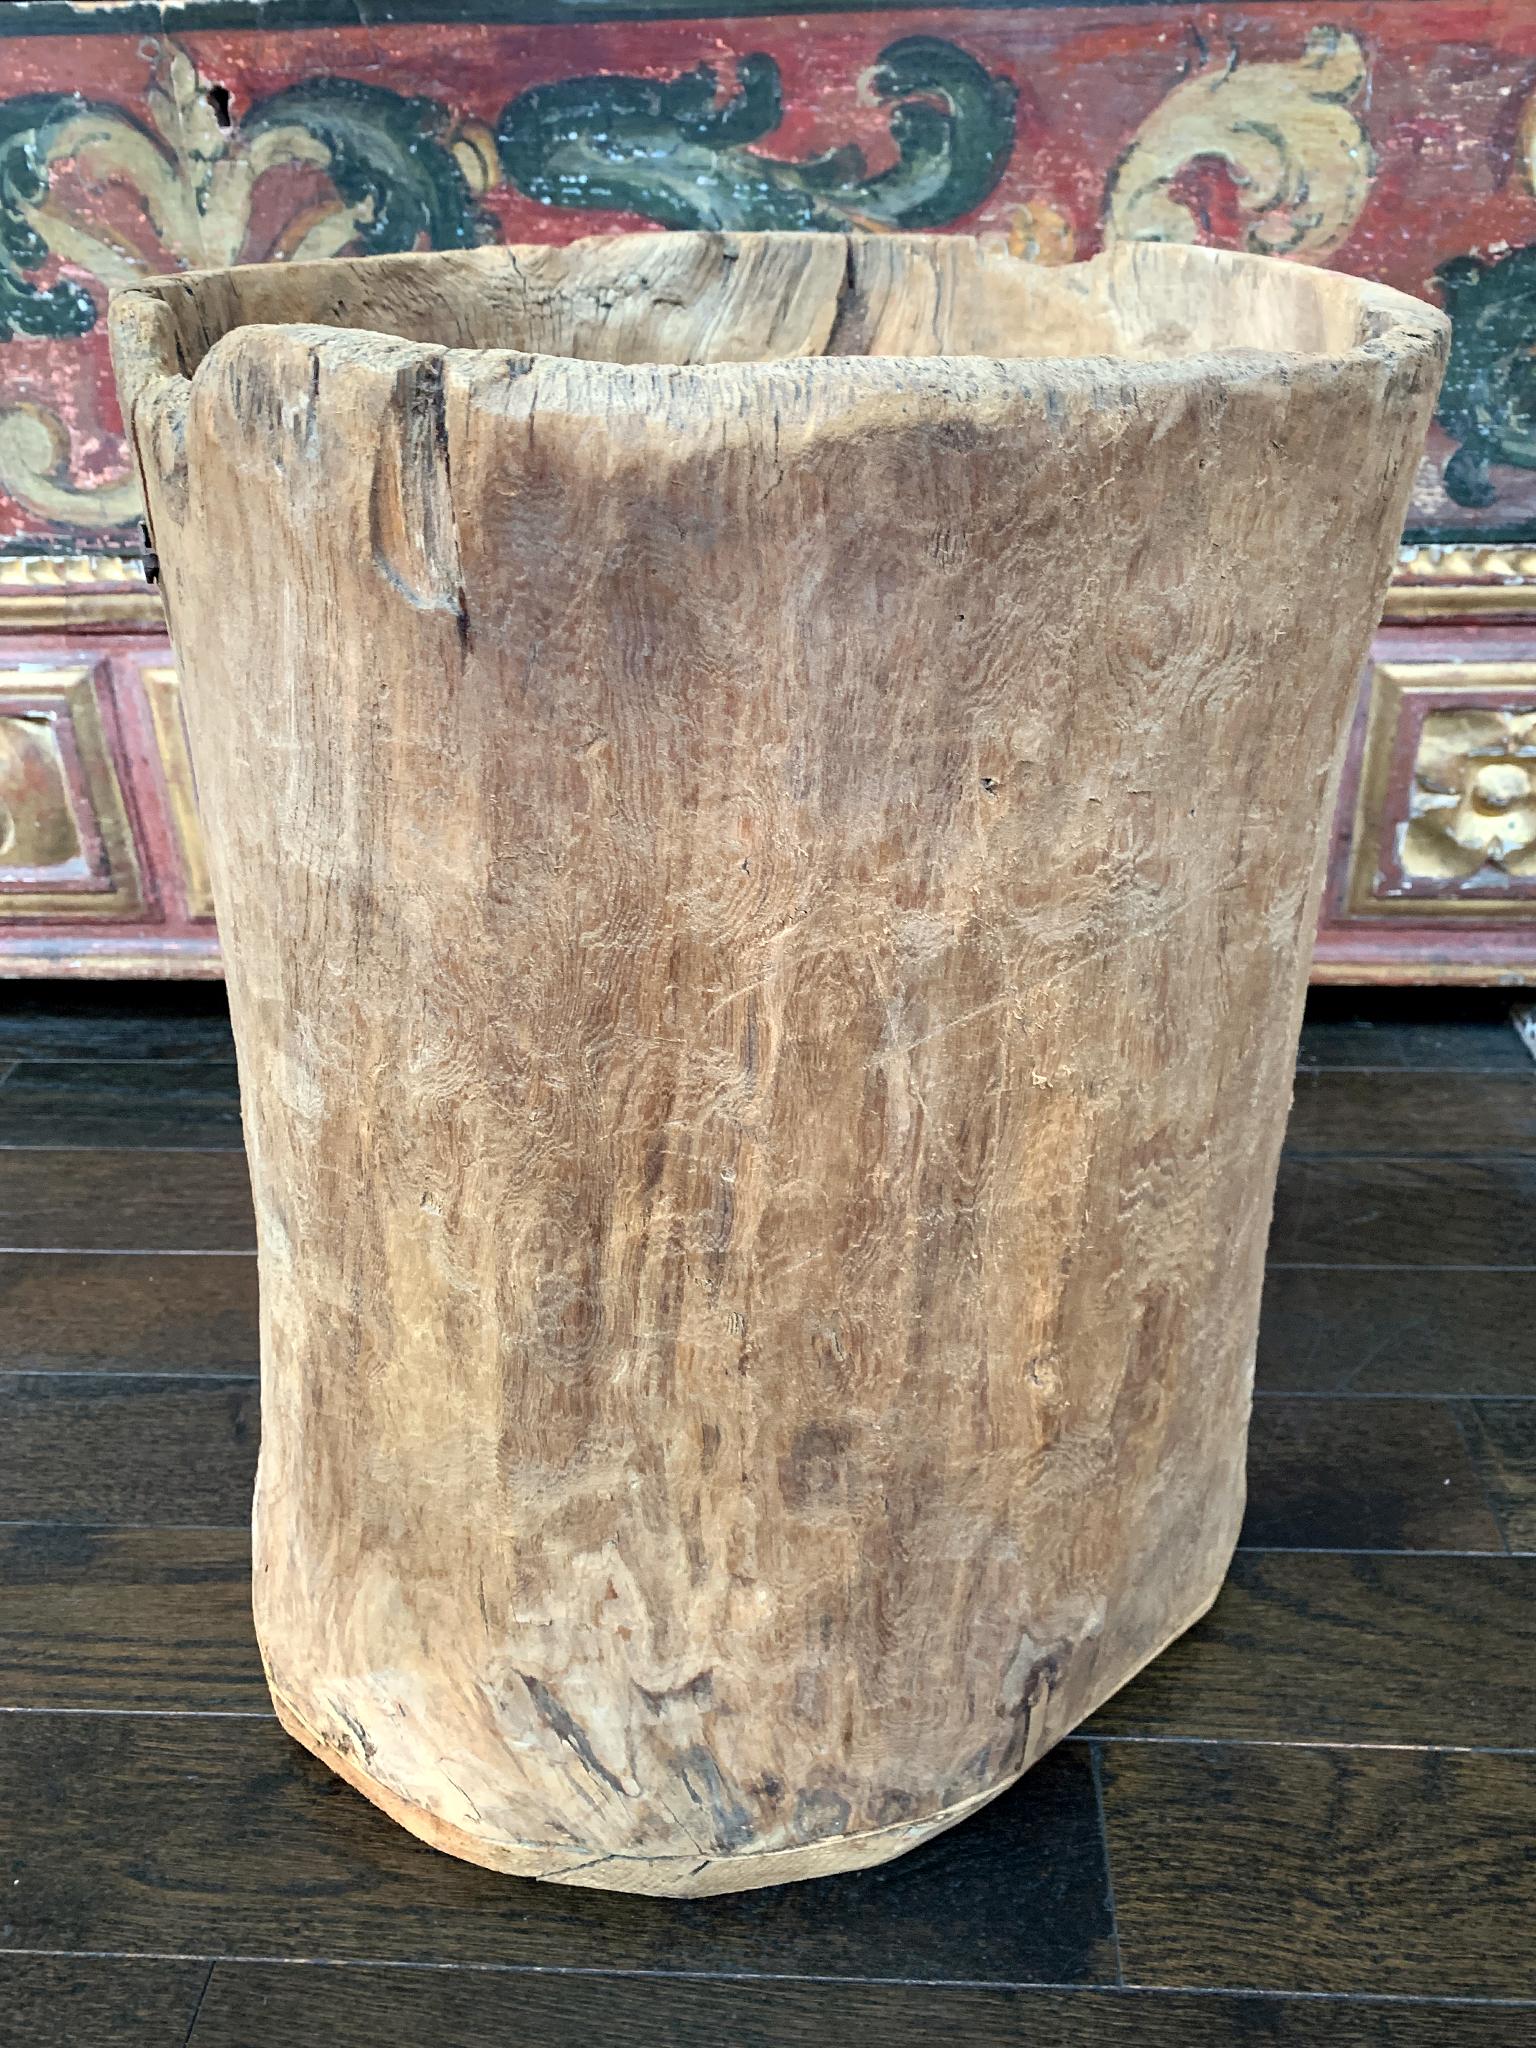 Dieses im 19. Jahrhundert hergestellte Fass wurde von Hand aus Weißbuchenholz geschnitzt. Es ist wunderschön anzufassen und natürlich verwittert, was dem Fass einen Hauch von Zeit und Geschichte verleiht.

Abmessungen:
13,75 Zoll Breite
13 in.